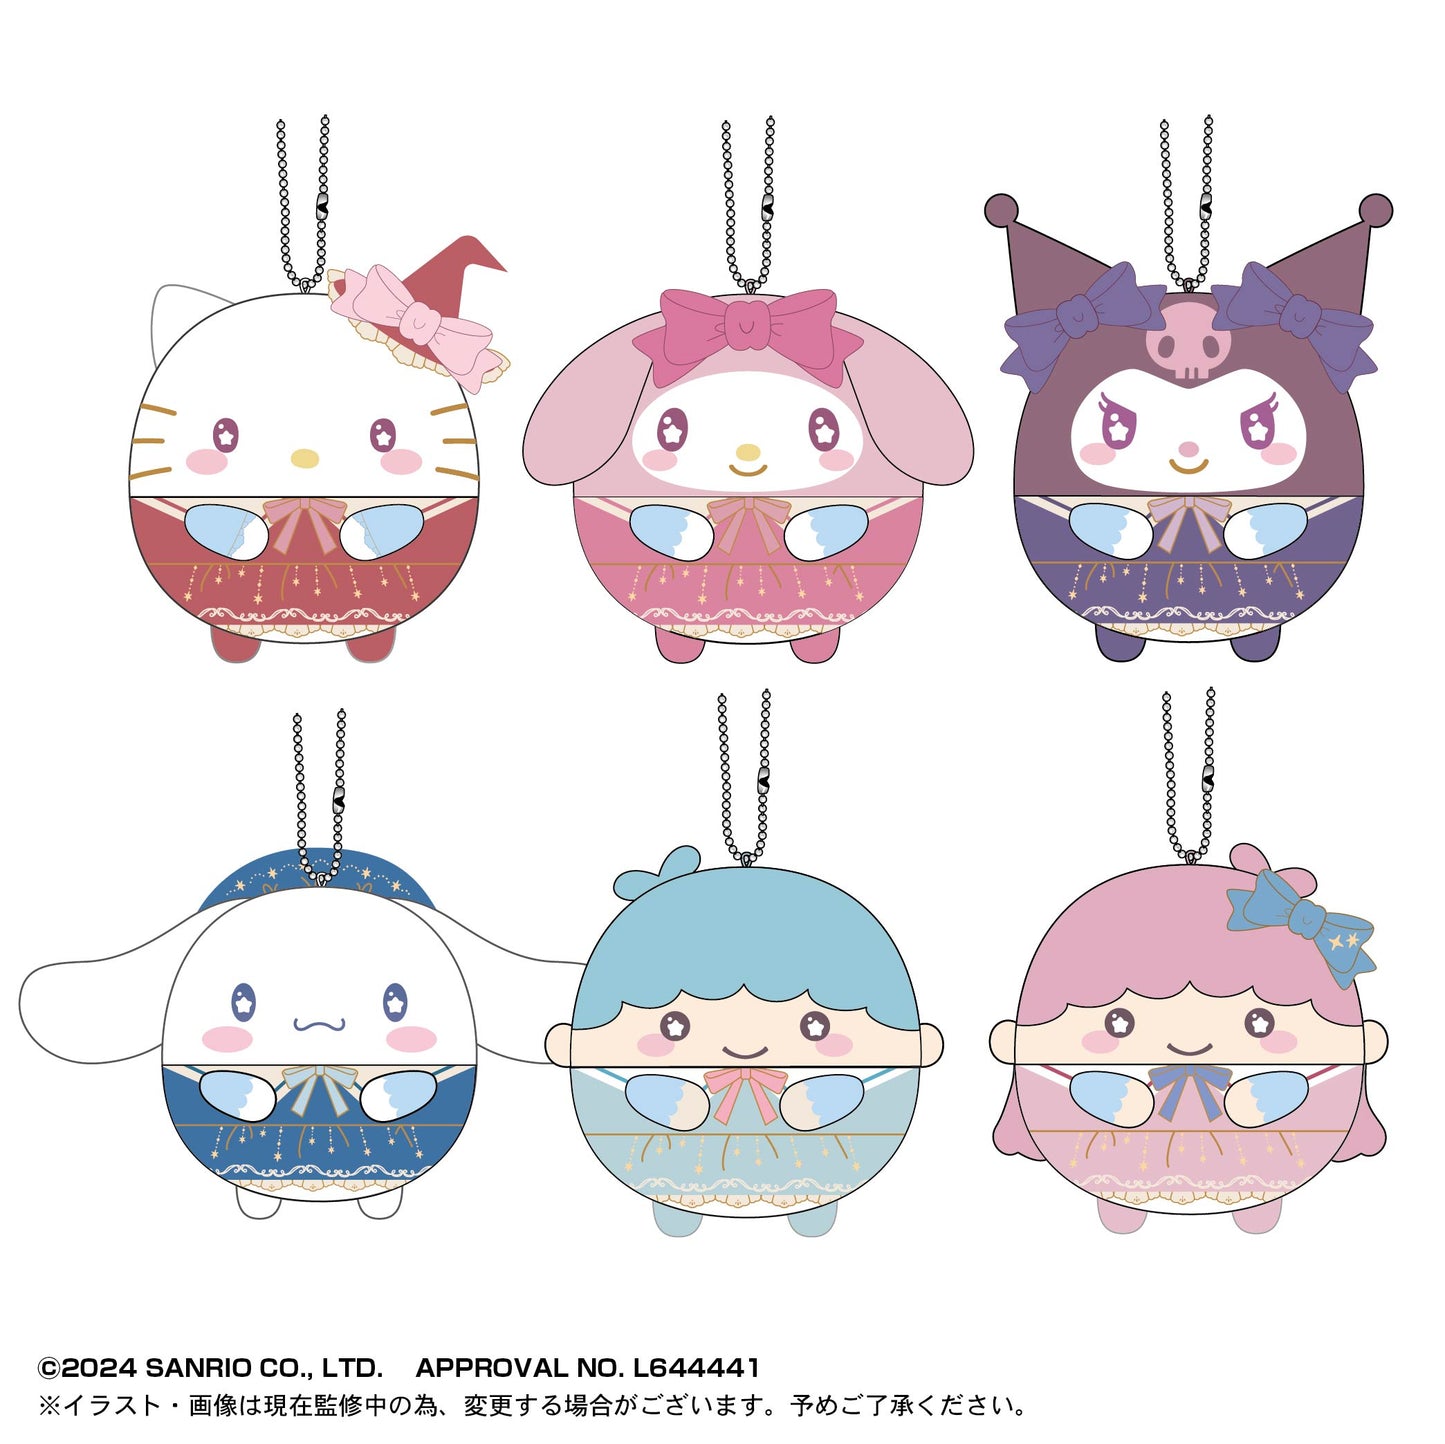 [OPENED] Sanrio Characters Fuwakororin Plush Mascot Blind Box